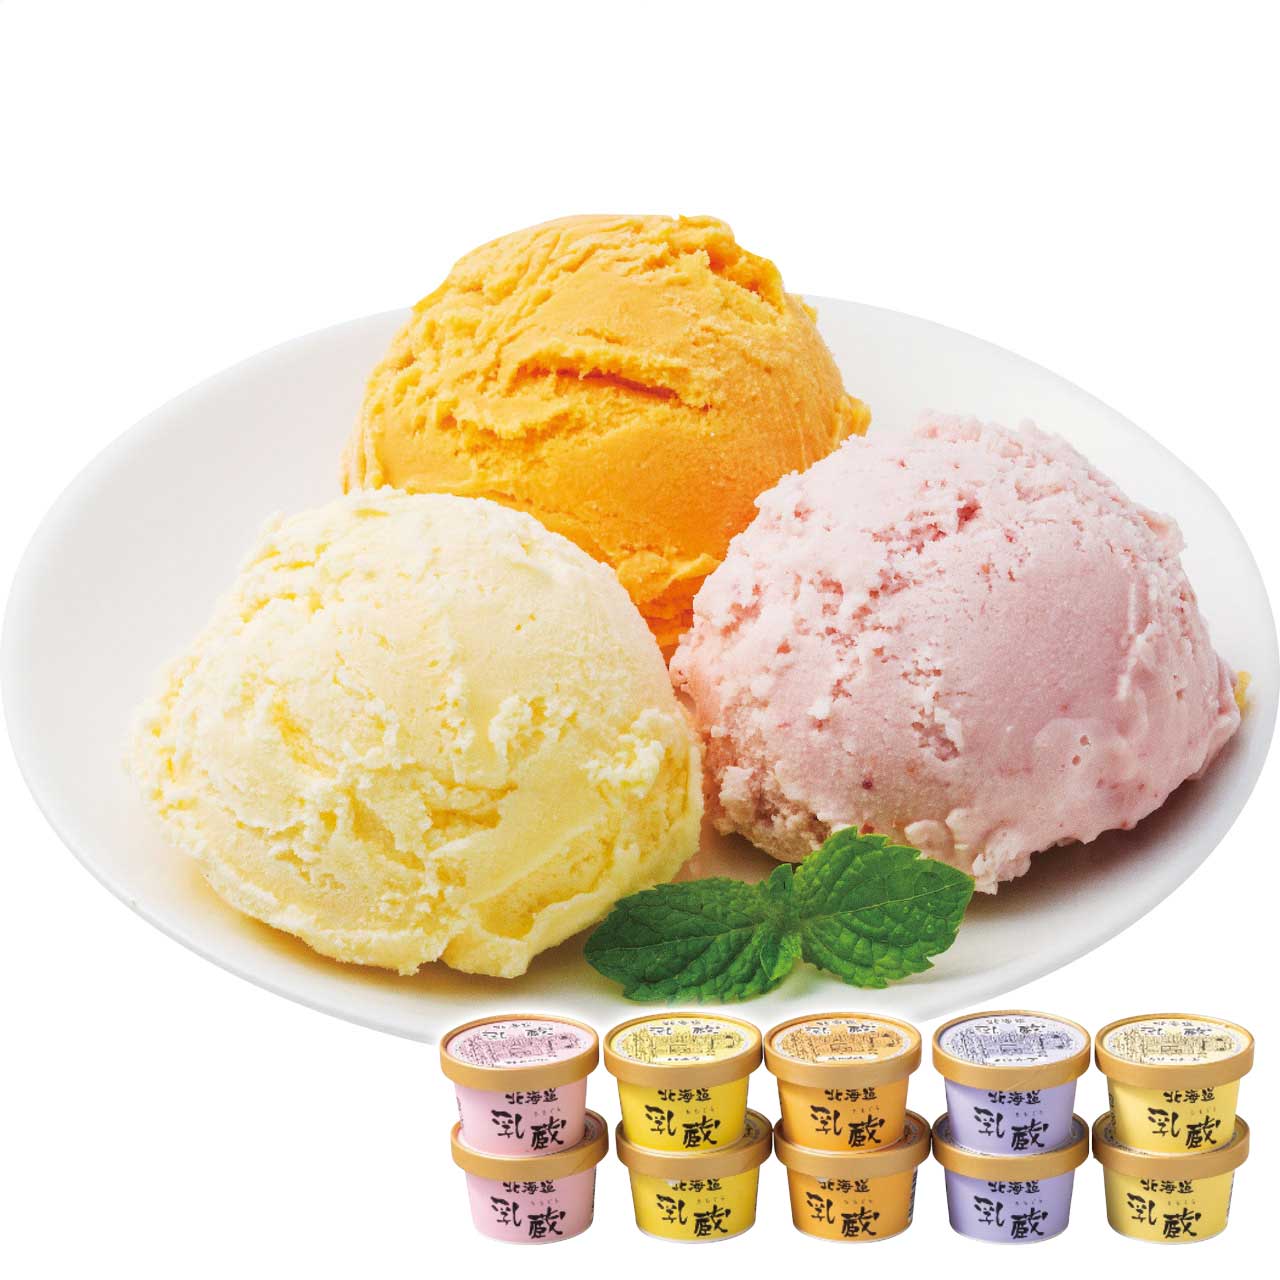 北海道アイスクリーム5種10個お歳暮ギフト年末贈り物贈答一年の感謝を込めて自分へのご褒美乳蔵【代引不可】【同梱不可】